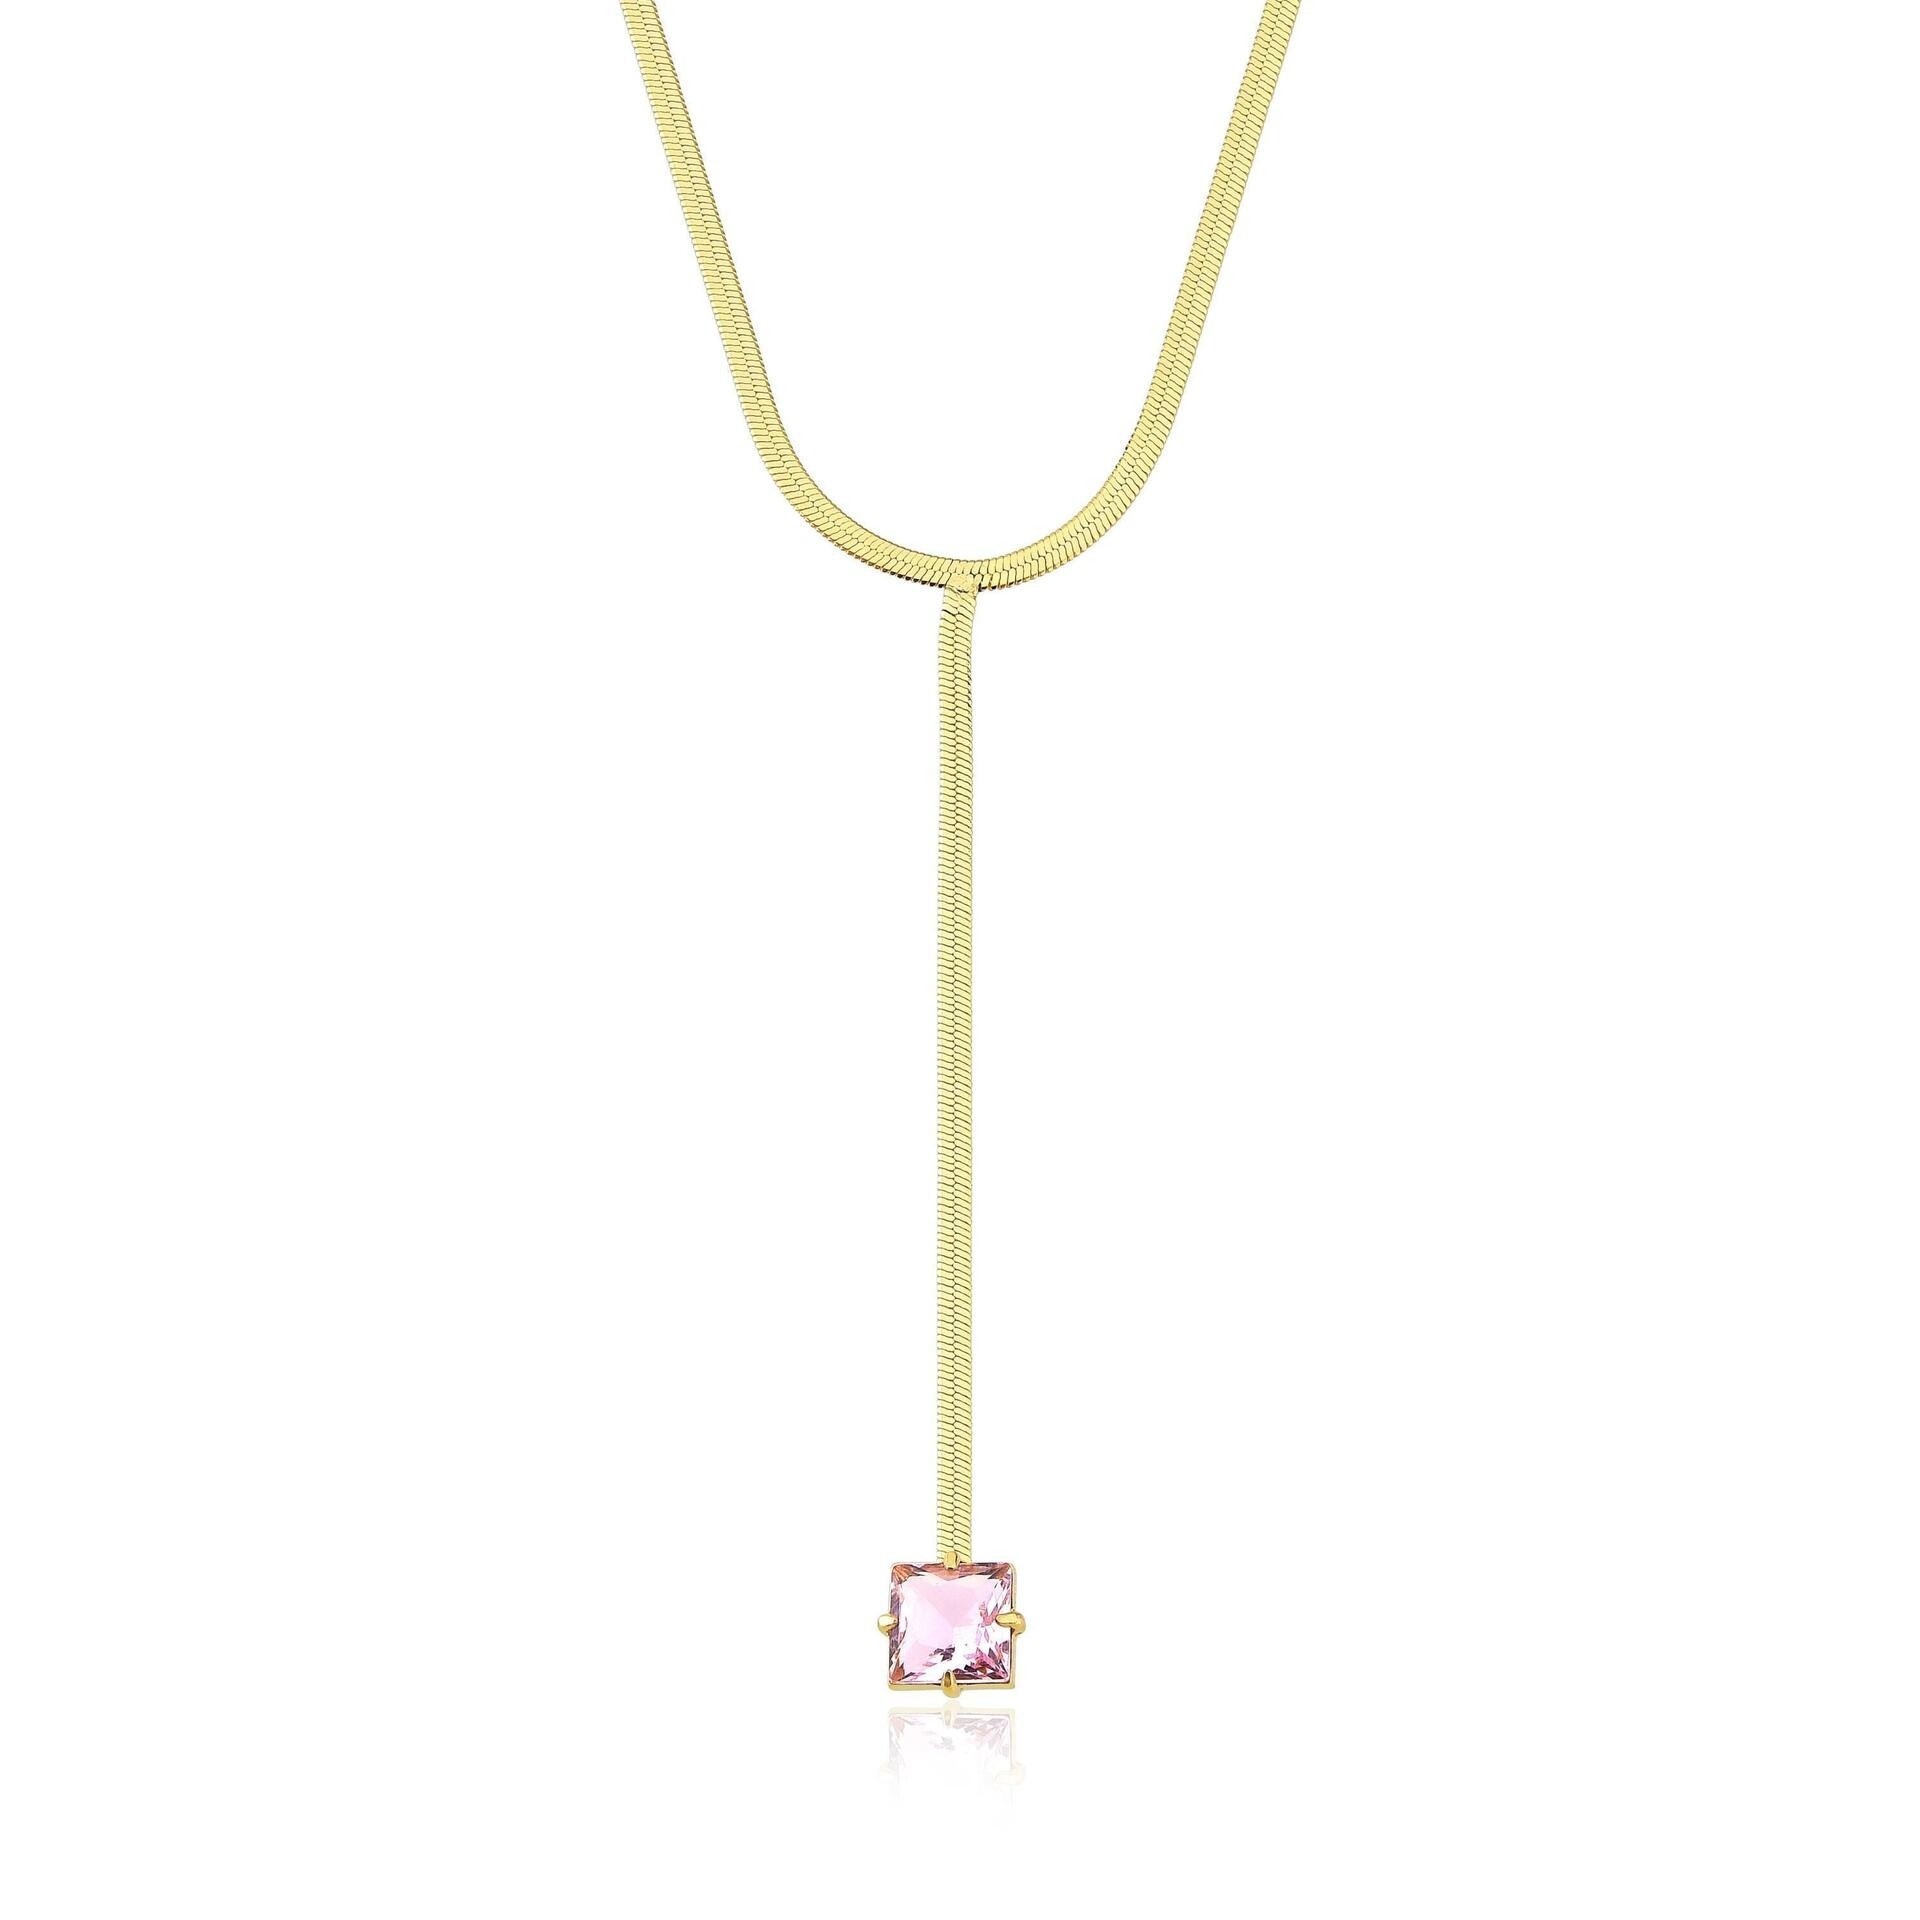 Colar amanda fita gravatinha com pedra quartzo rosa folheado a ouro 18k